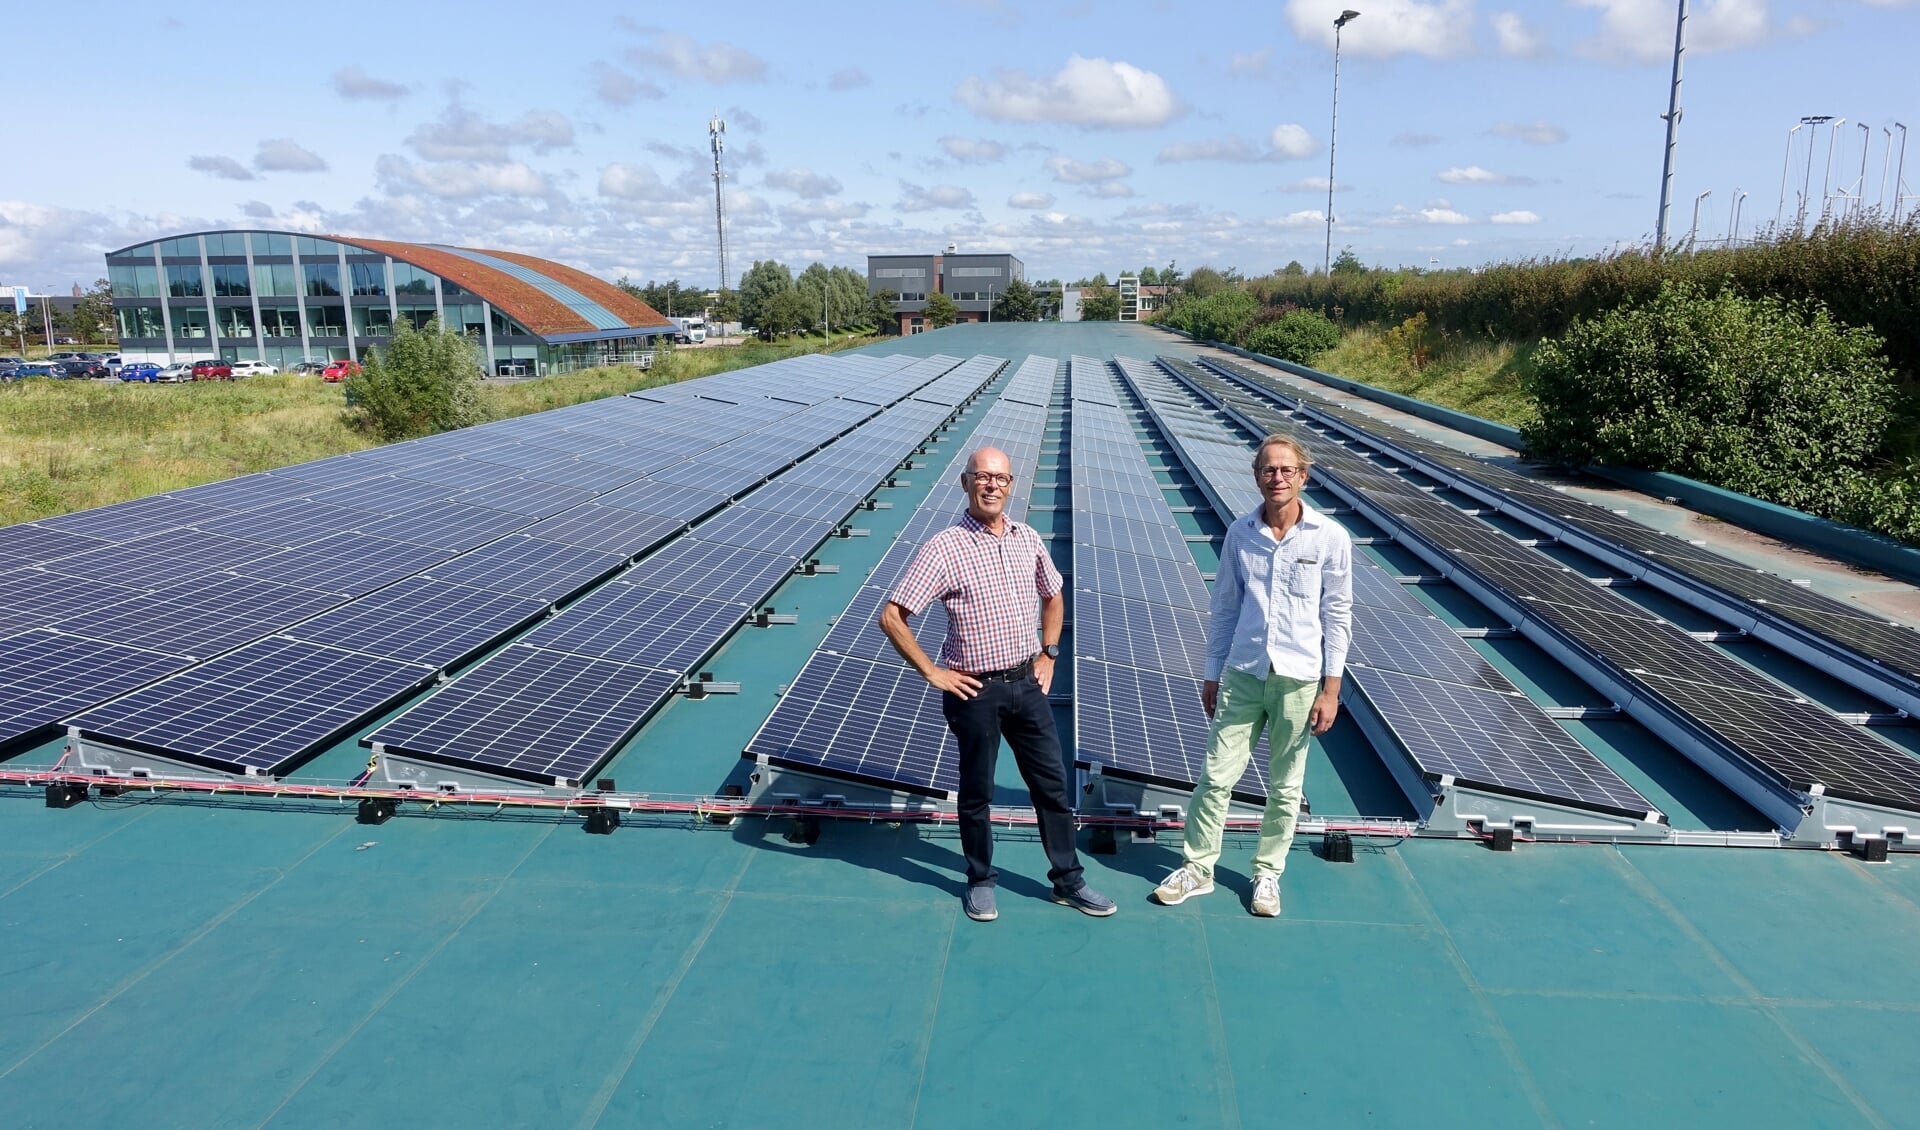 Bestuursleden Loek van Driel en Patrick Wijngaard van de Katwijkse Energie Coöperatie op het dak van Schietsportvereniging Katwijk op sportpark de Krom. Achteraan op het dak komen de 500 à 600 zonnepanelen van ‘Buurtstroom Katwijk 1’. | Foto: pr